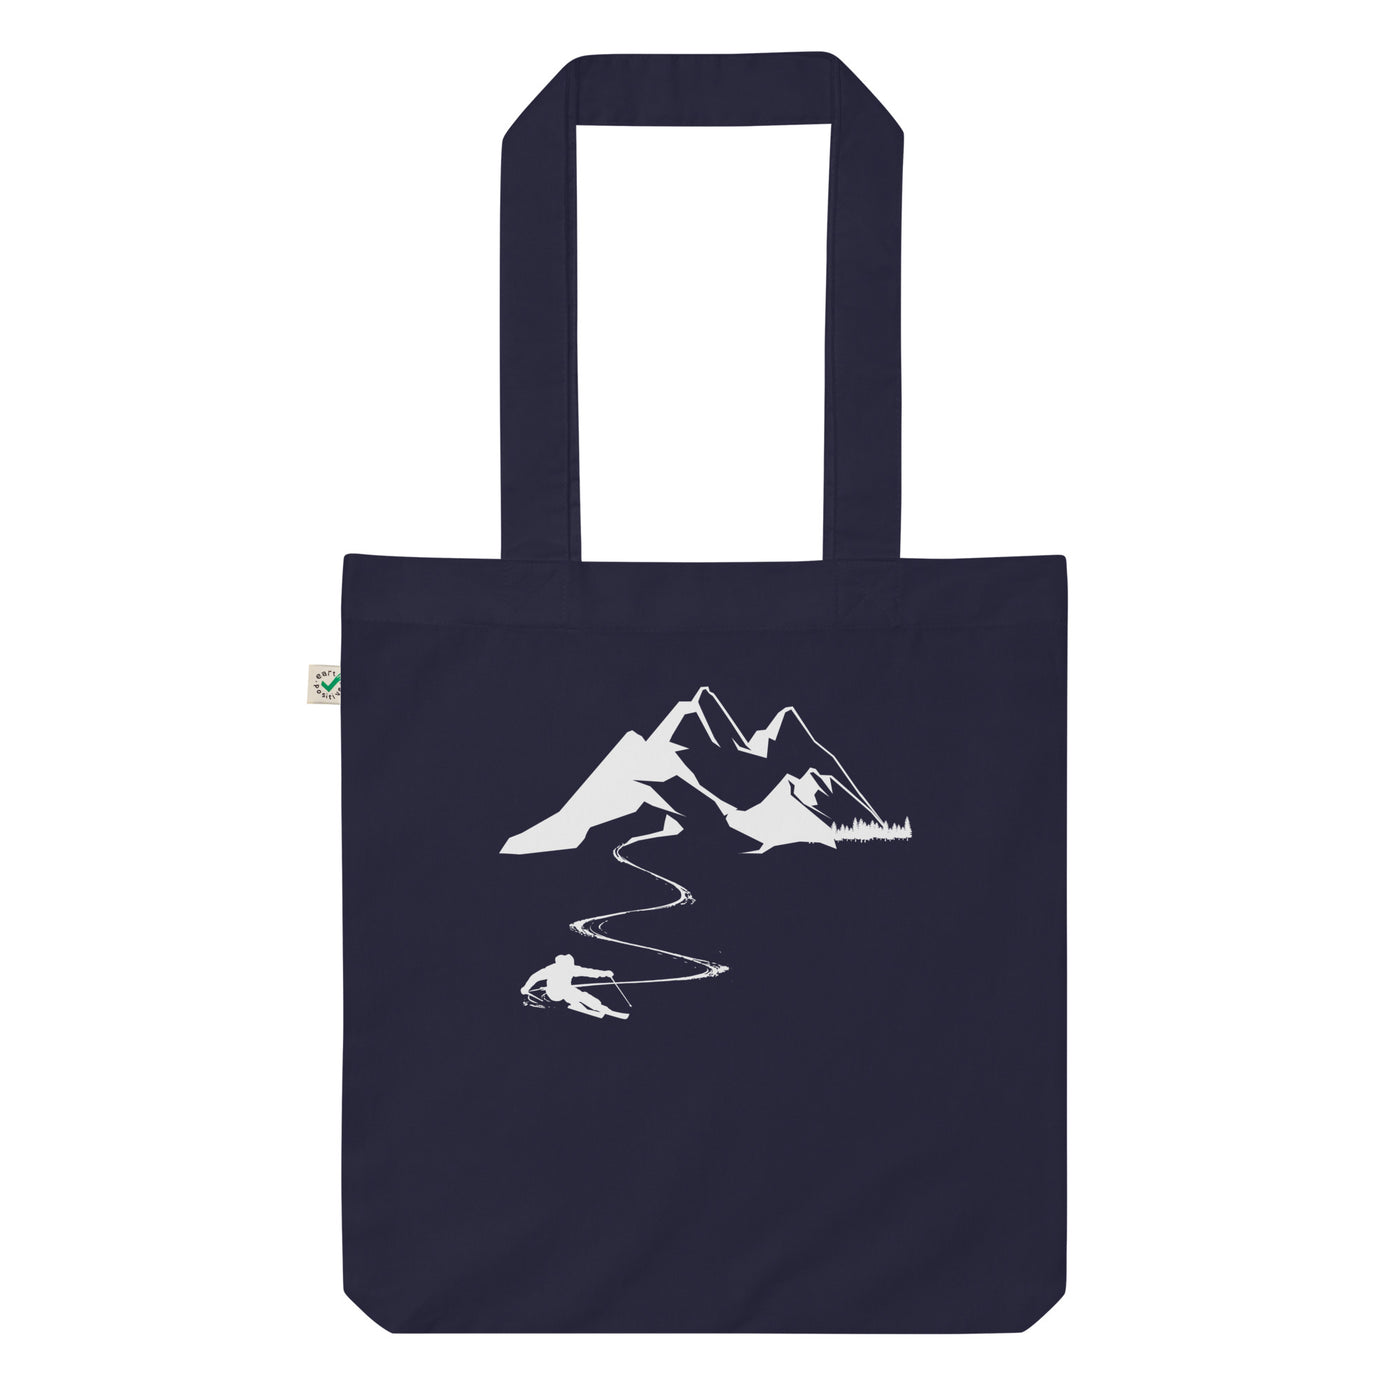 Skisüchtig - Organic Einkaufstasche ski